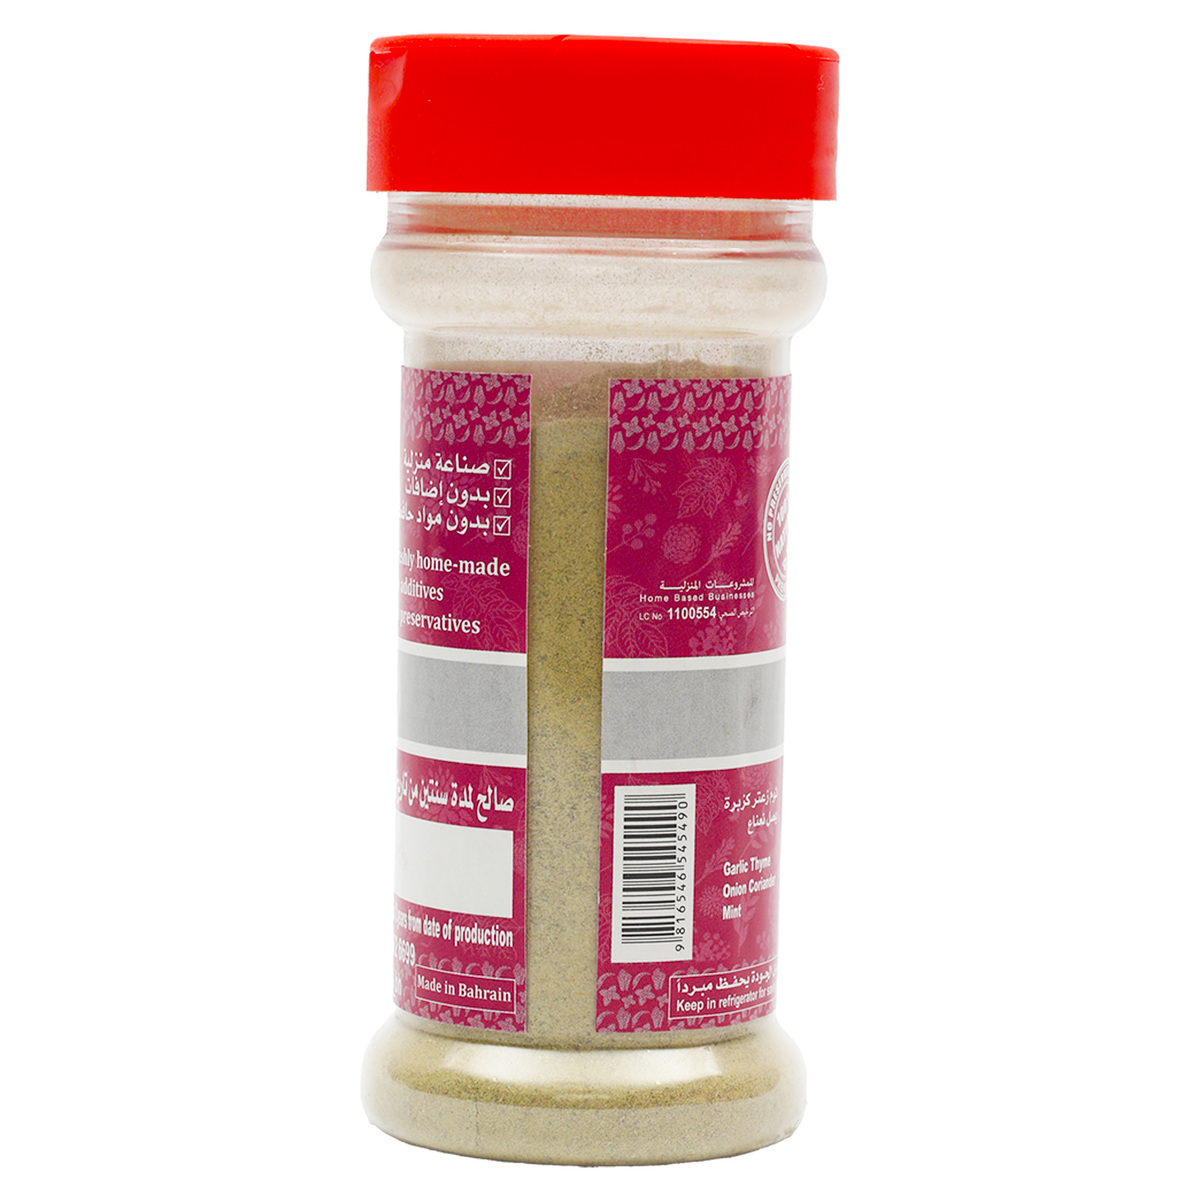 Al Matooq Pasta Spices 60 g